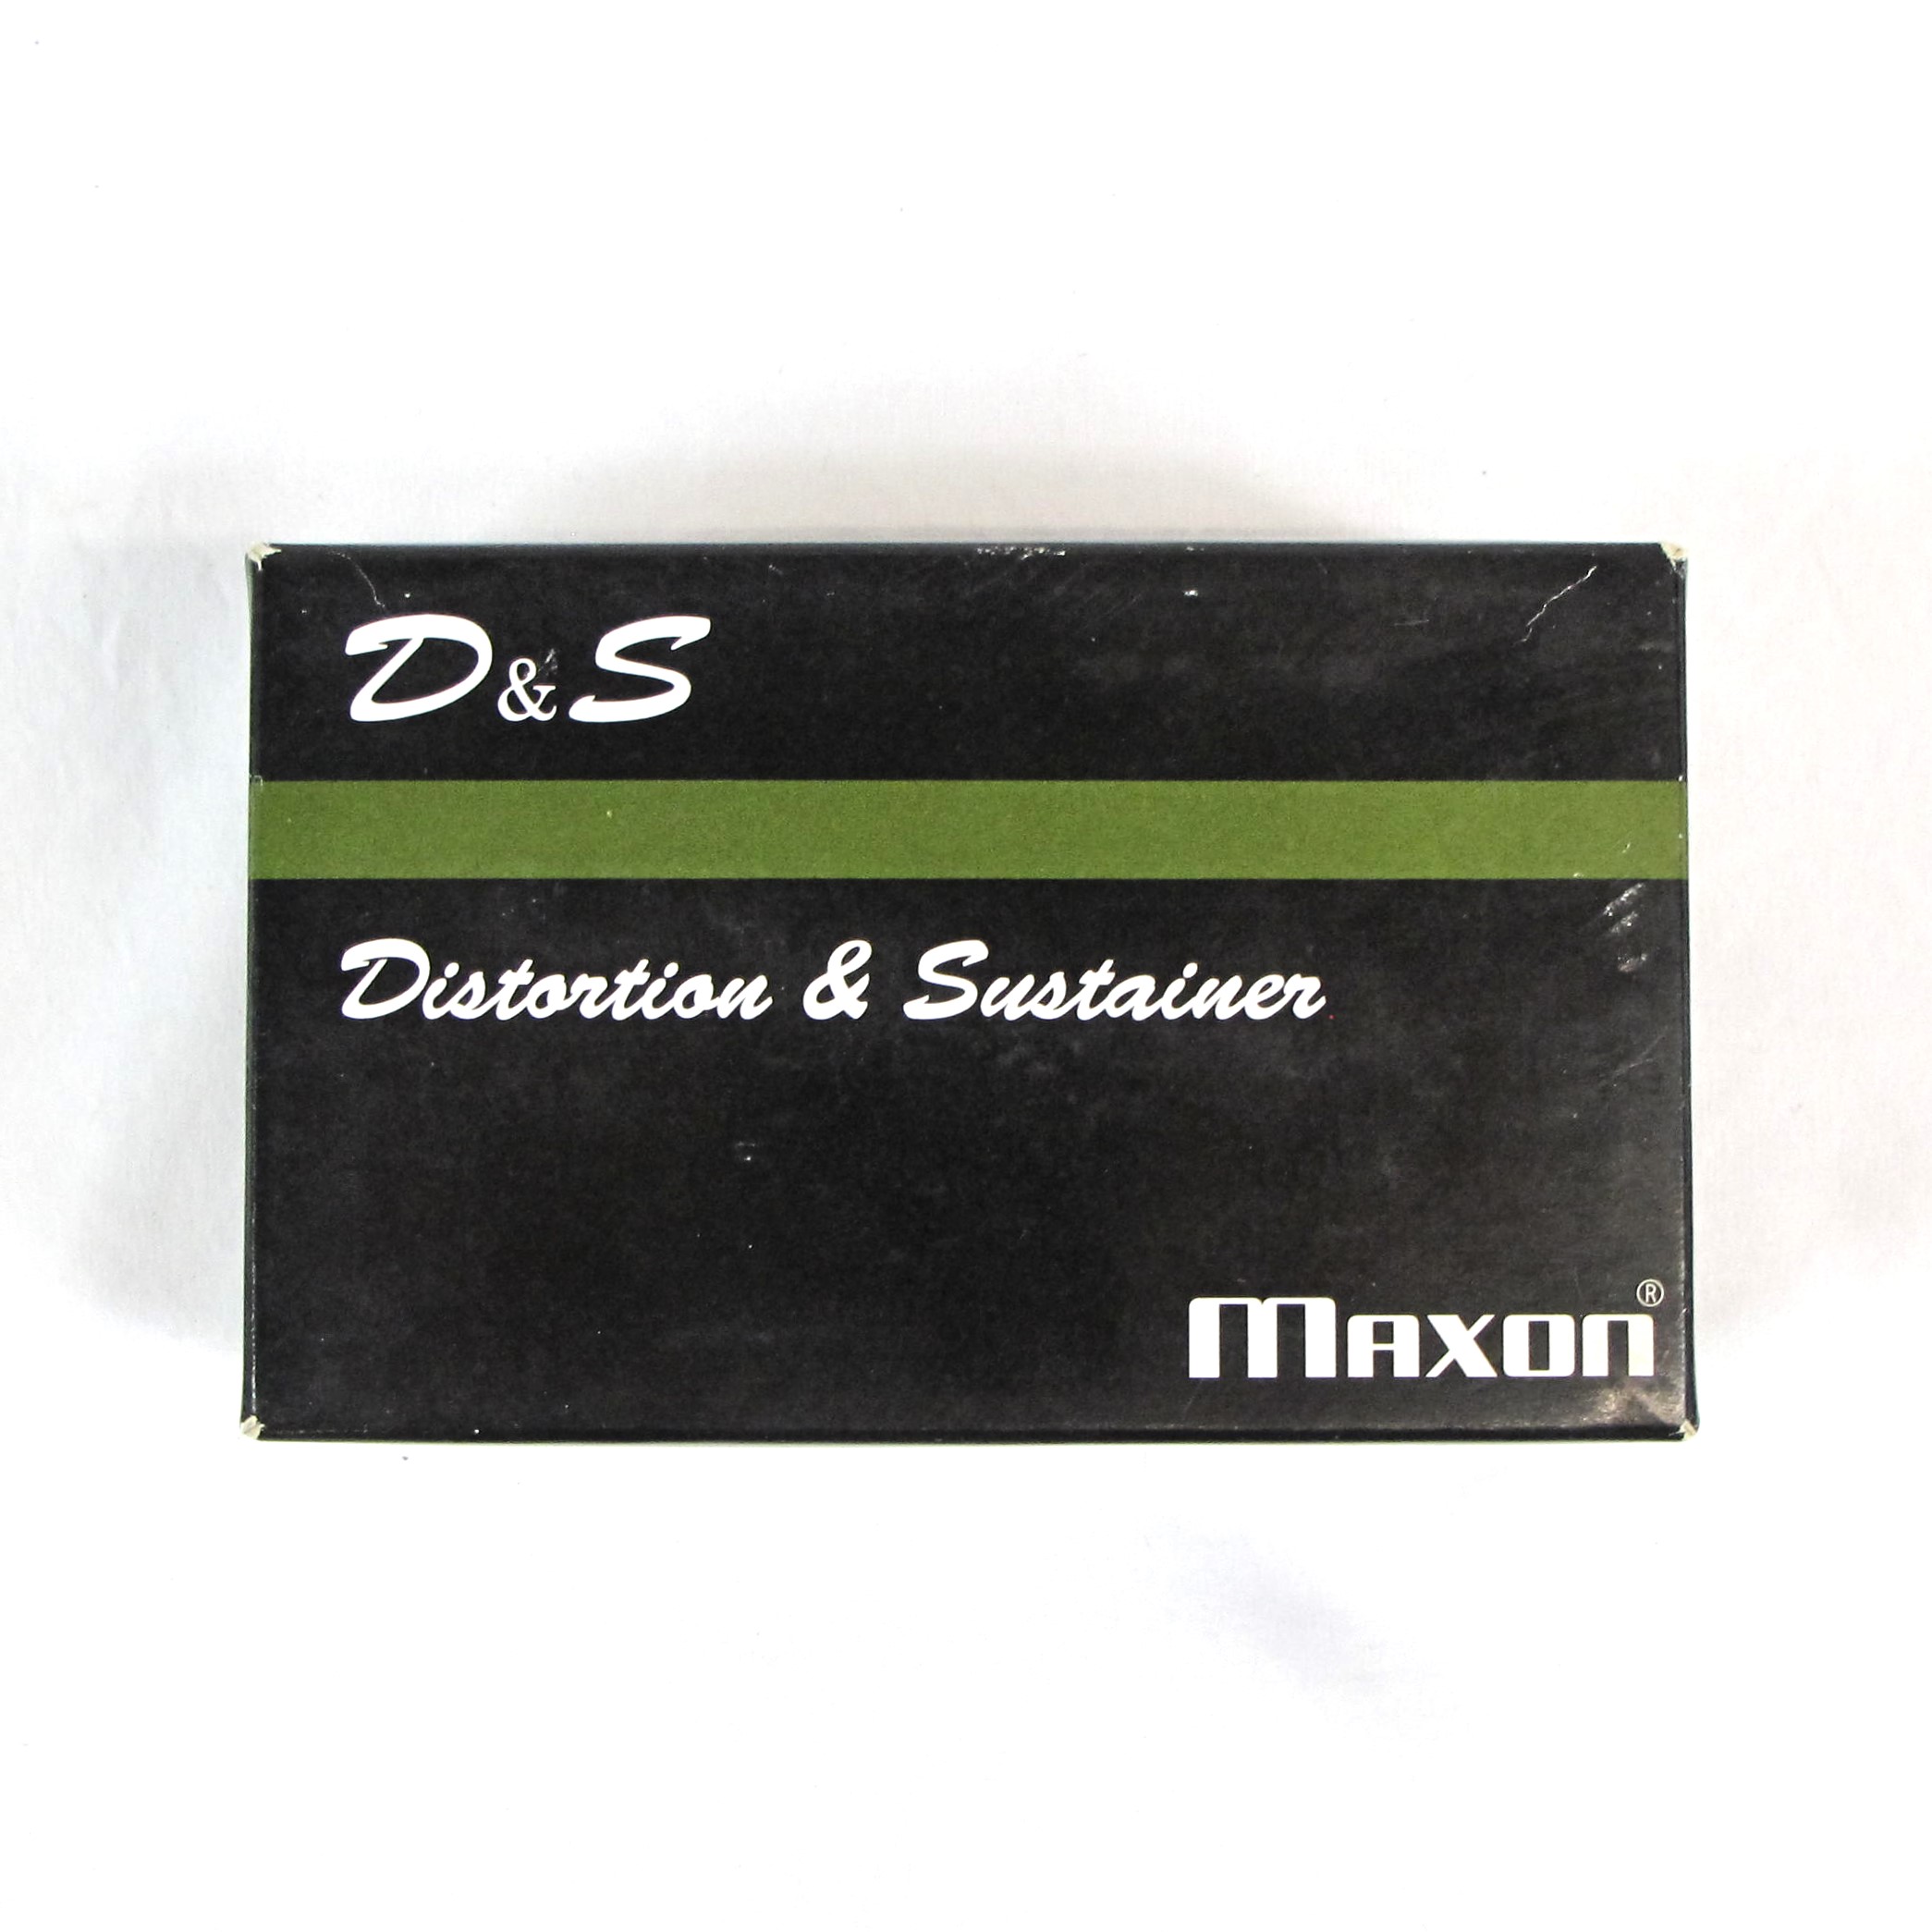 MAXON Du0026S DISTORTION SUSTAINER W/ BOX